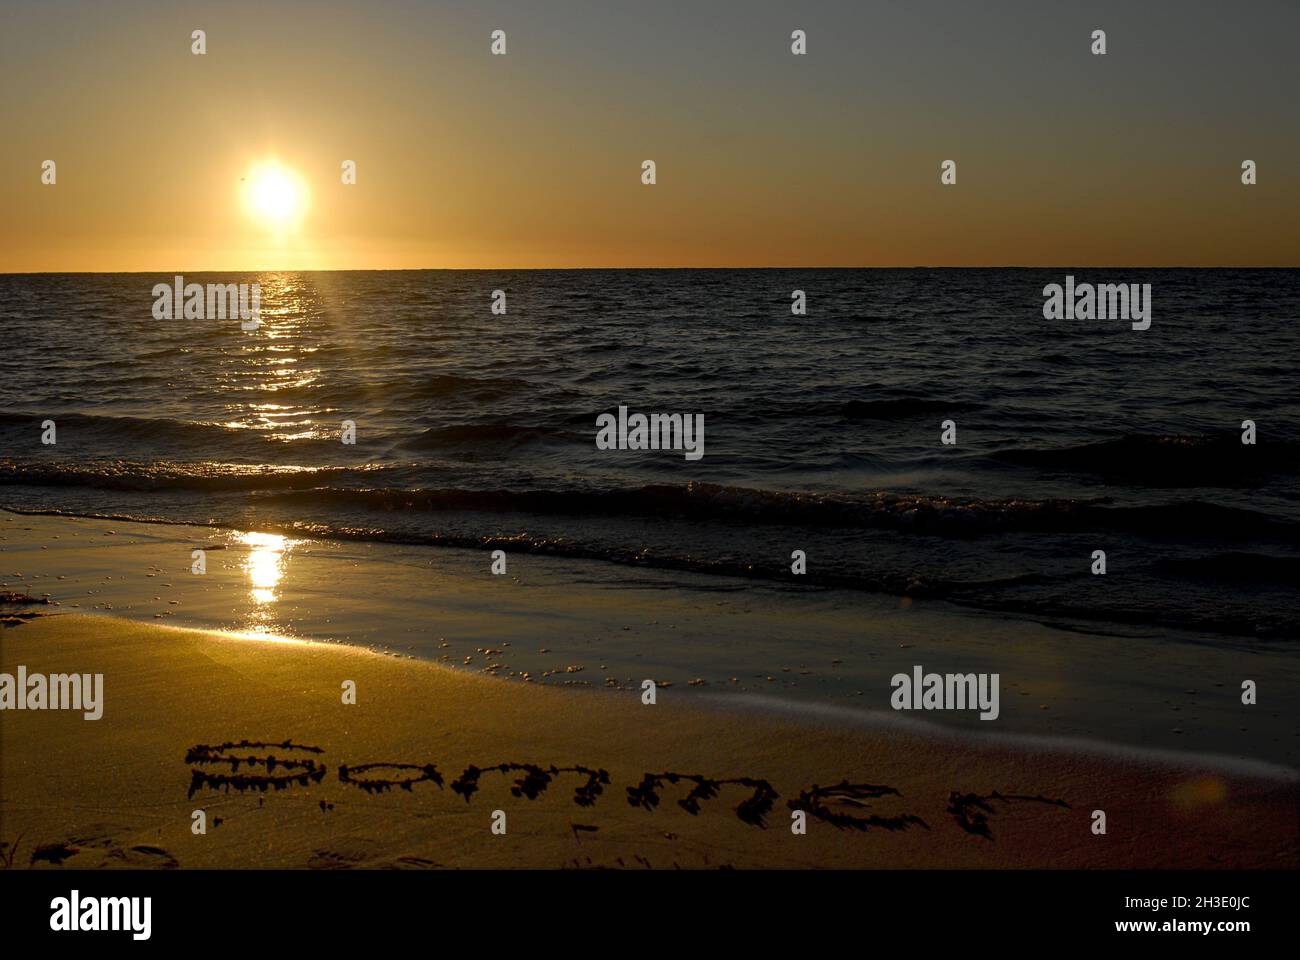 Scrivere 'Sammer' (estate) sulla spiaggia, Australia Foto Stock